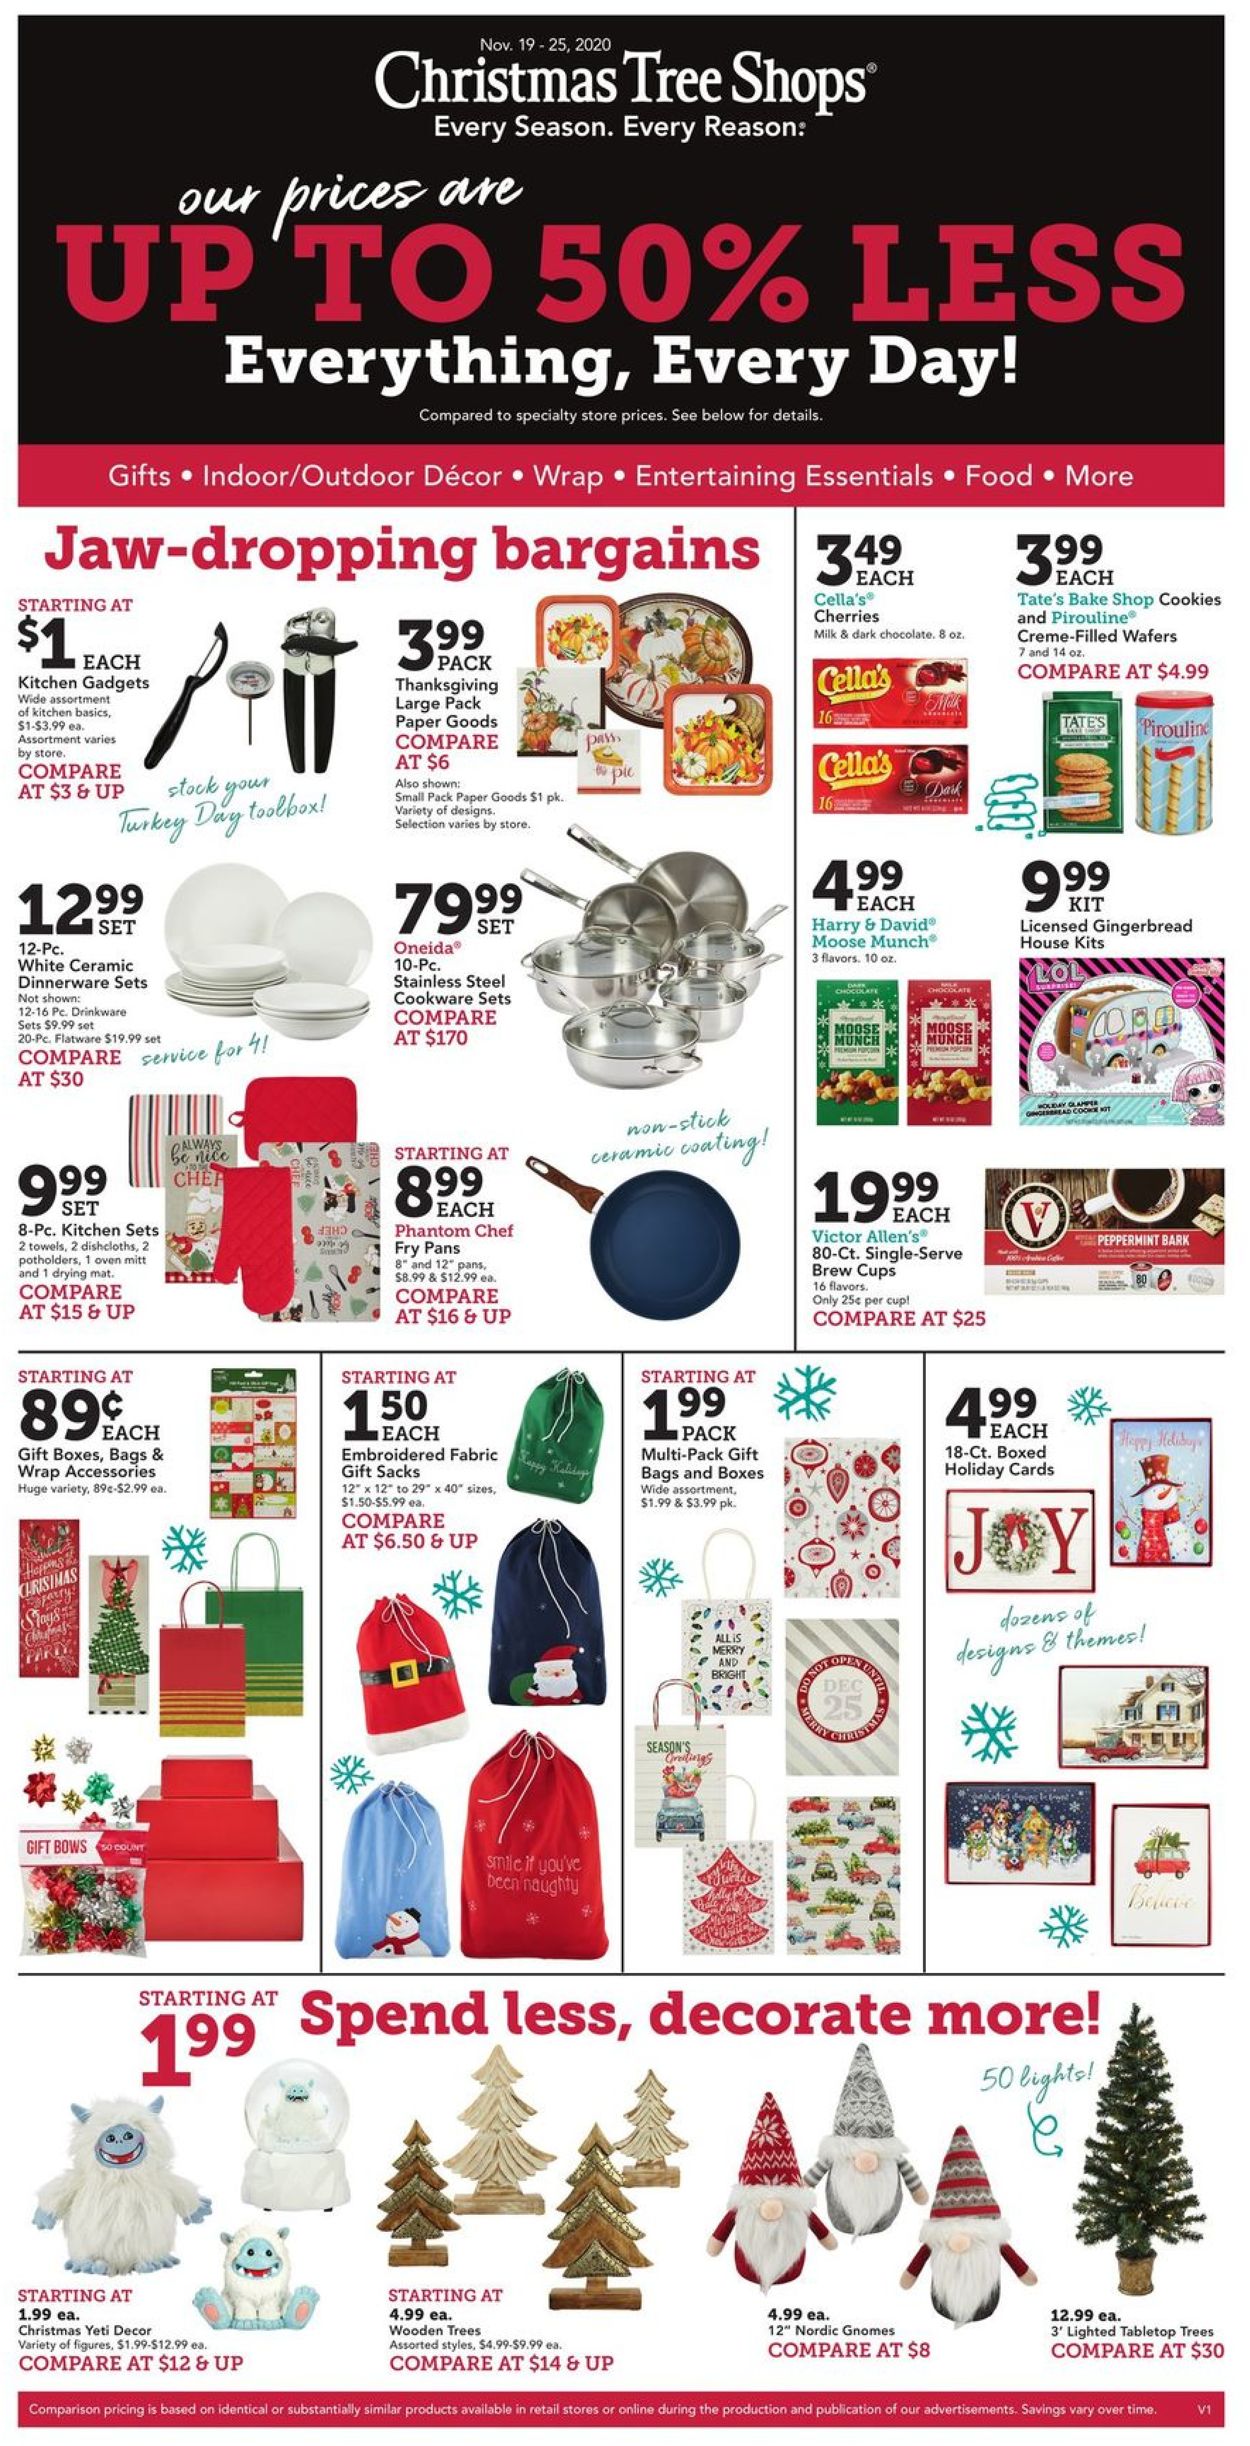 Christmas Tree Shops Holiday ad 2020 Weekly Ad Circular - valid 11/19-11/25/2020